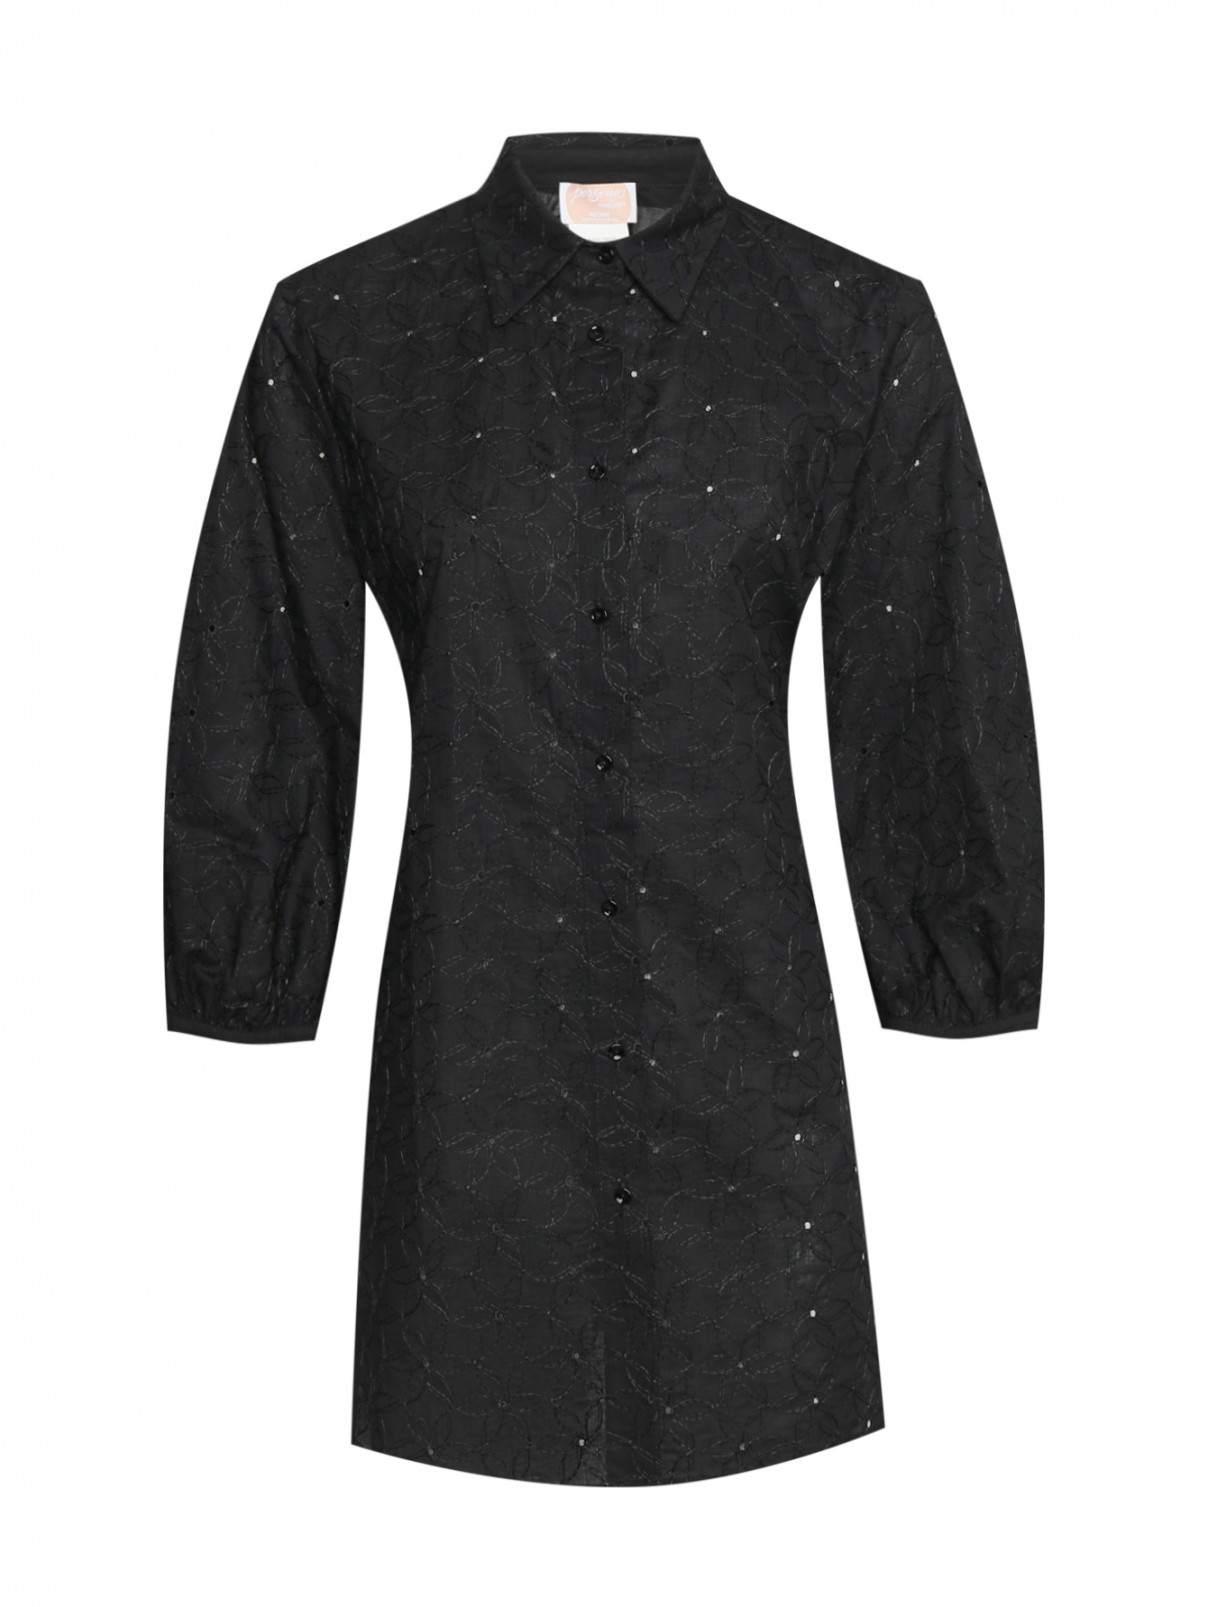 Блуза из смешанных тканей с вышивкой Persona by Marina Rinaldi  –  Общий вид  – Цвет:  Черный